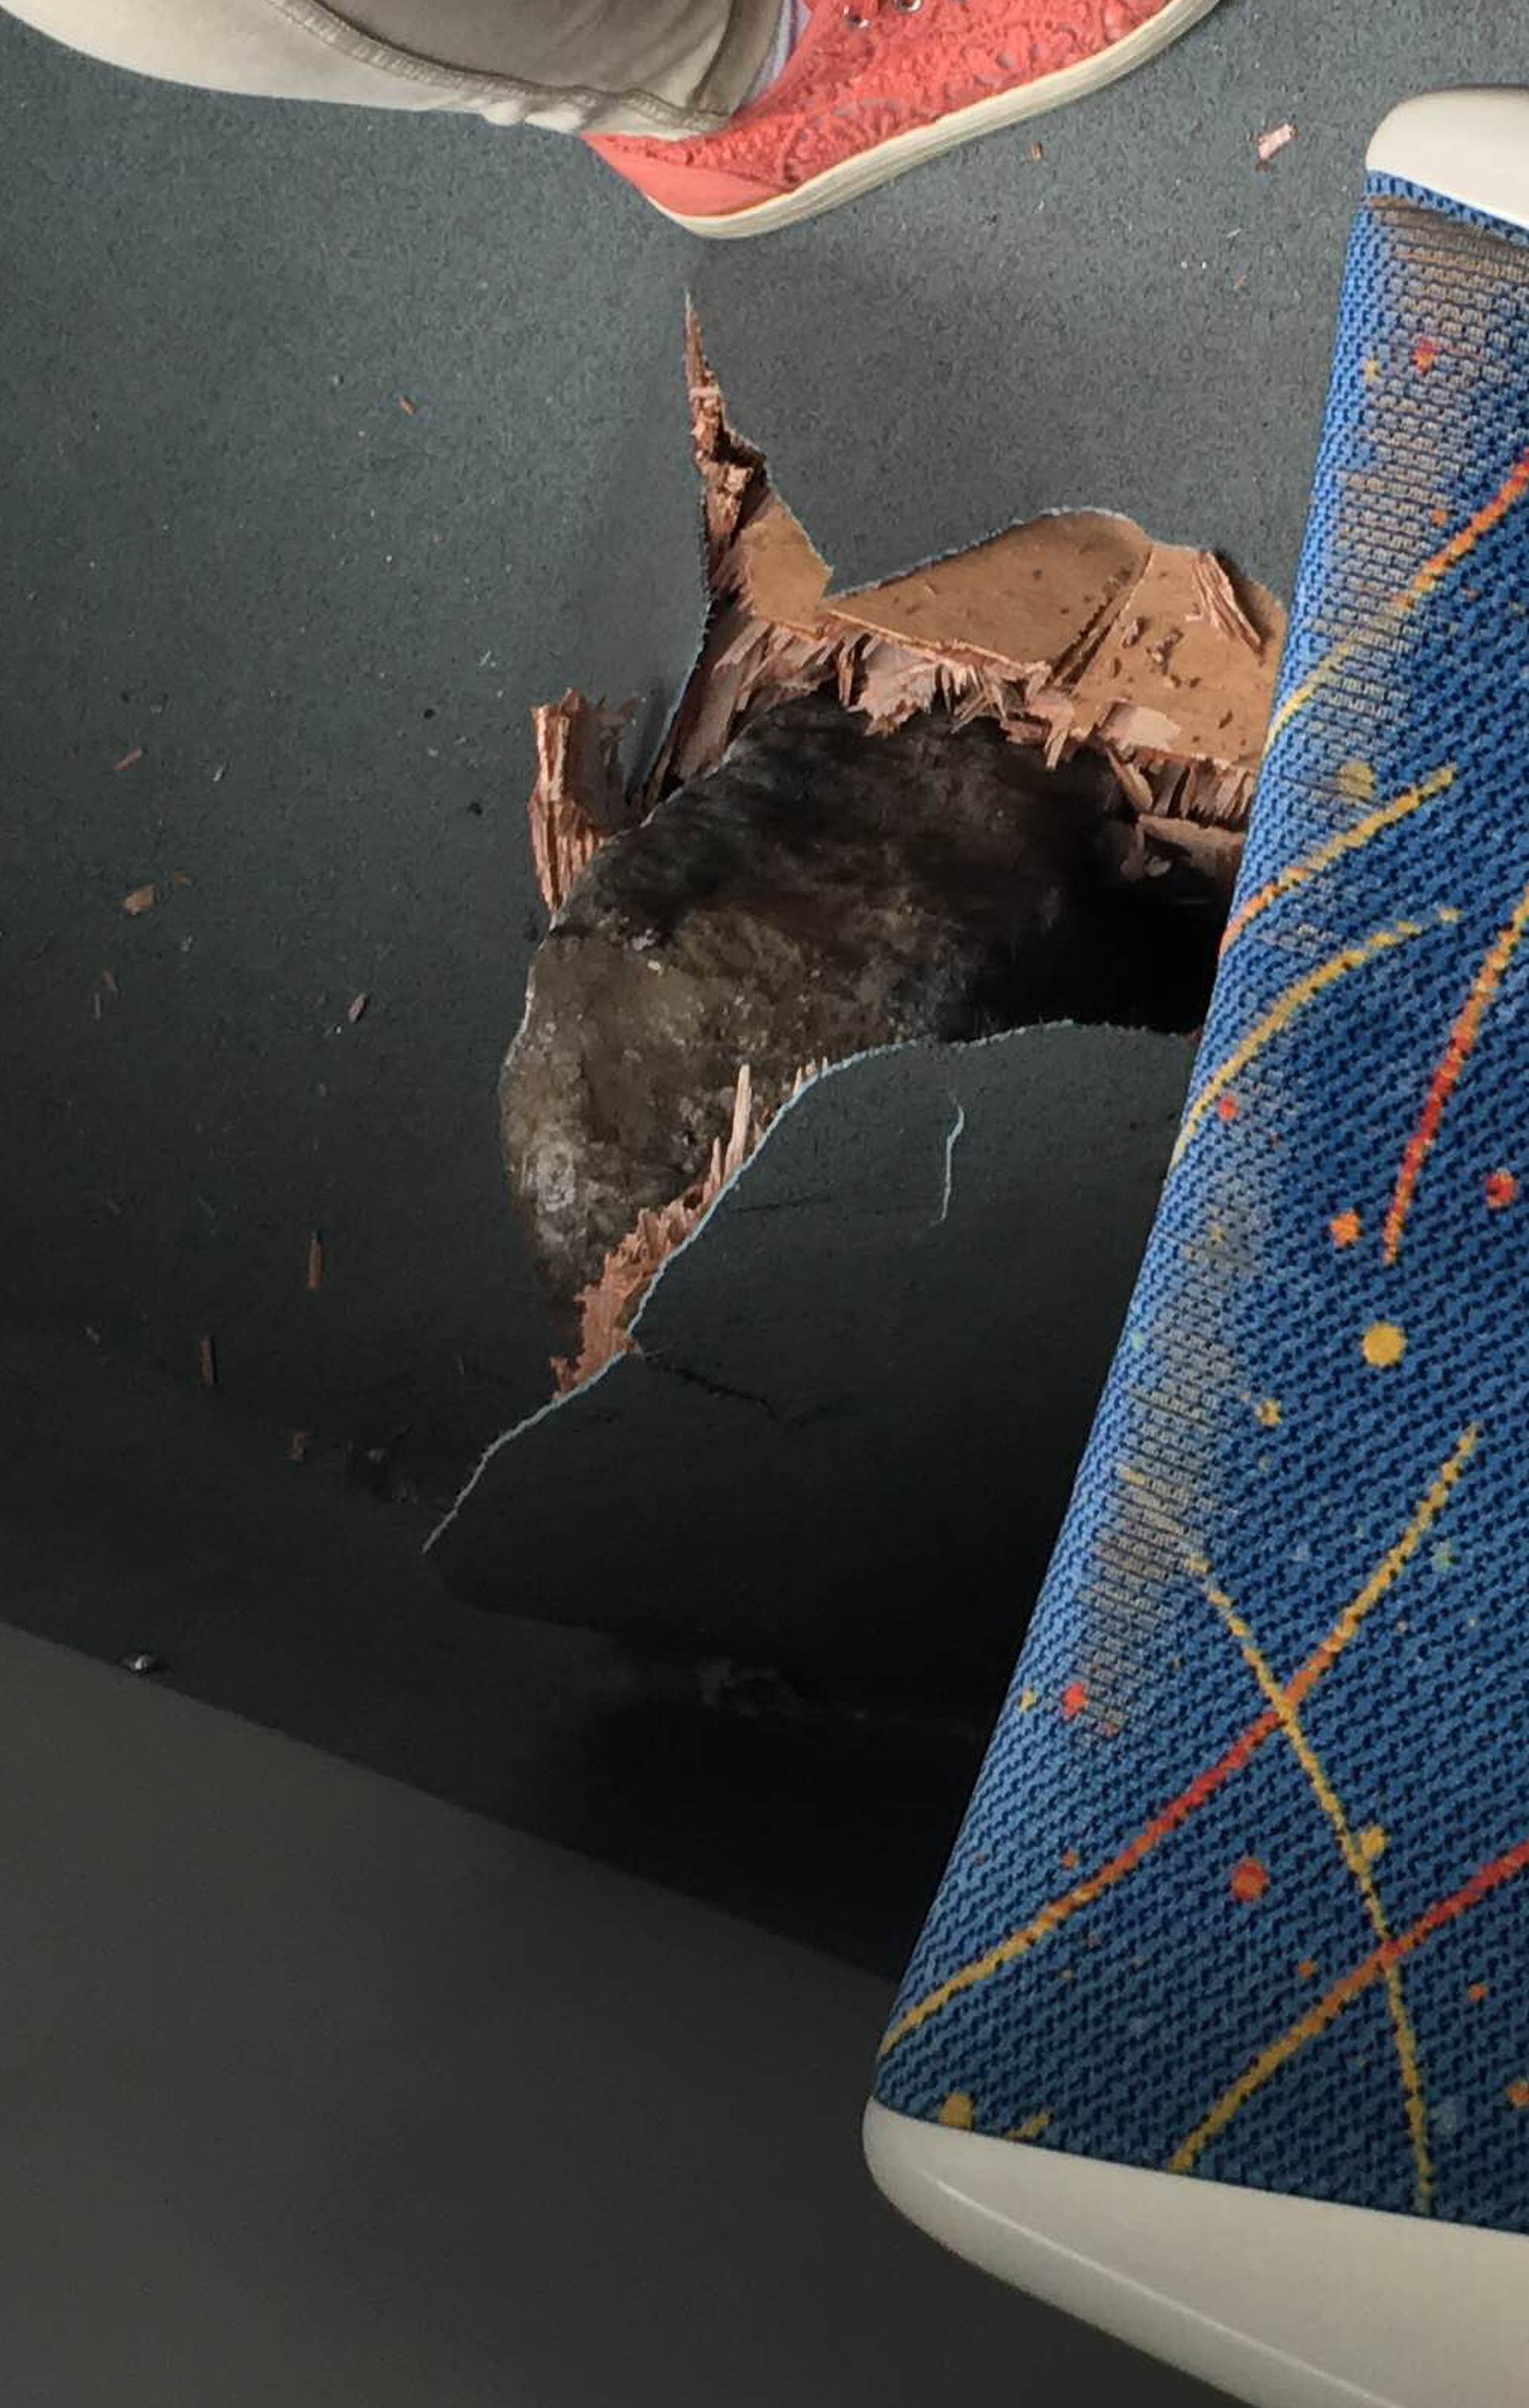 Netom prije tu je sjedila žena: Kamen probio pod tramvaja 11